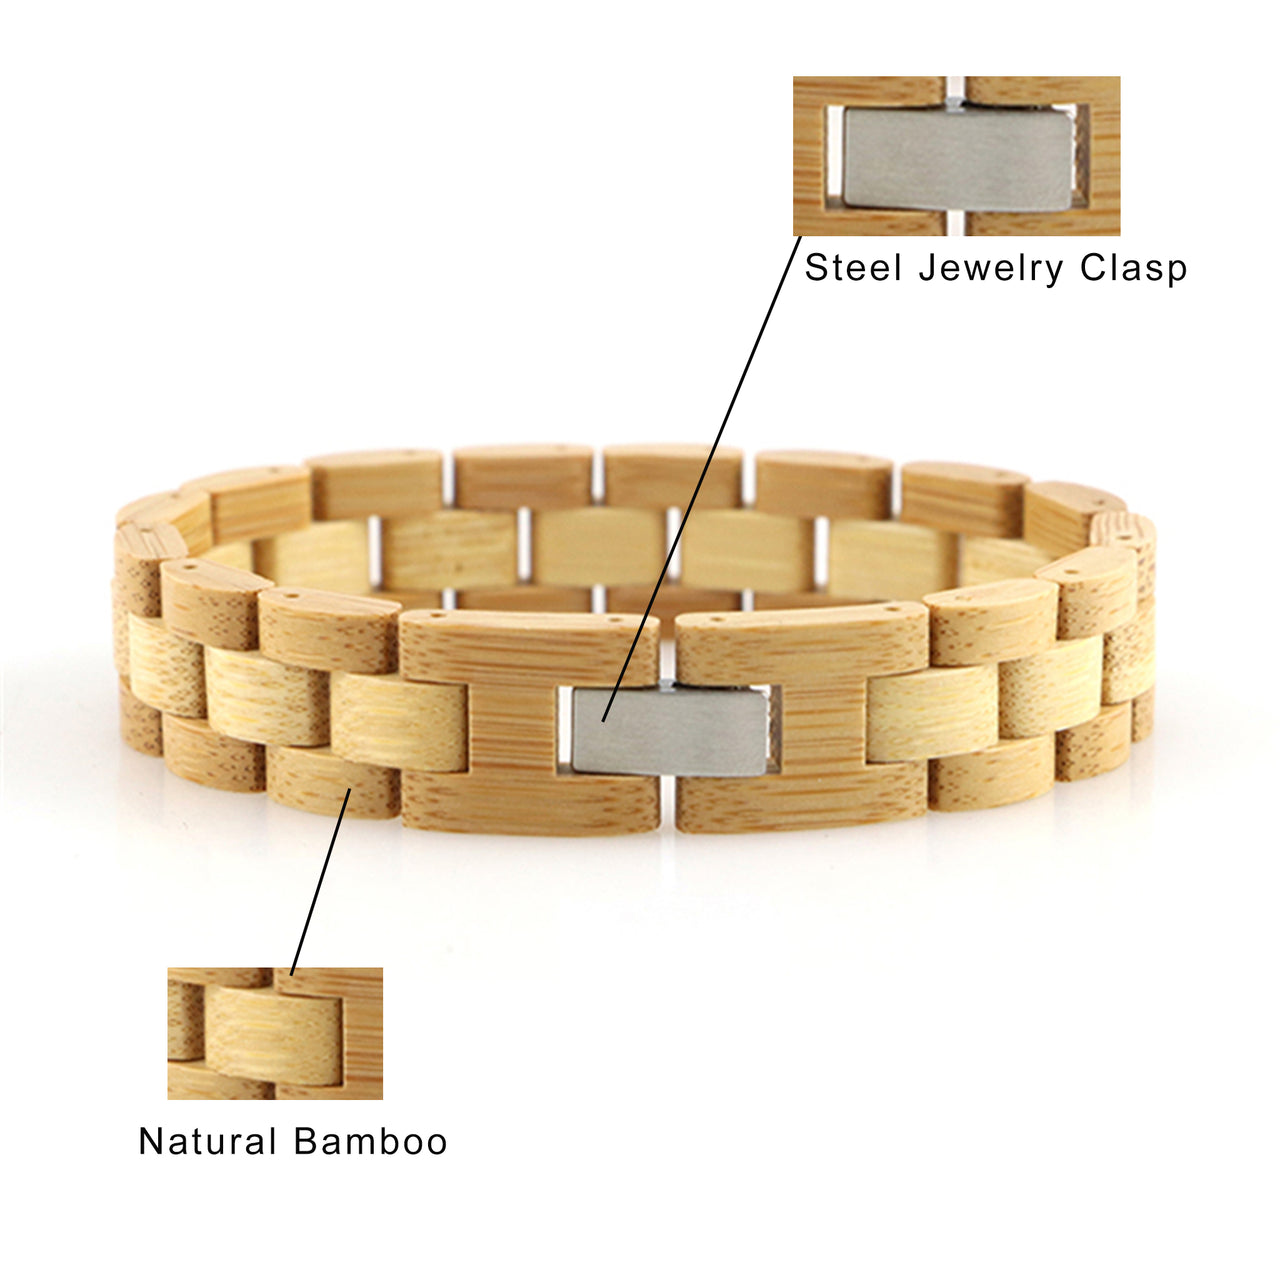 Nothing But Wood Bracelet